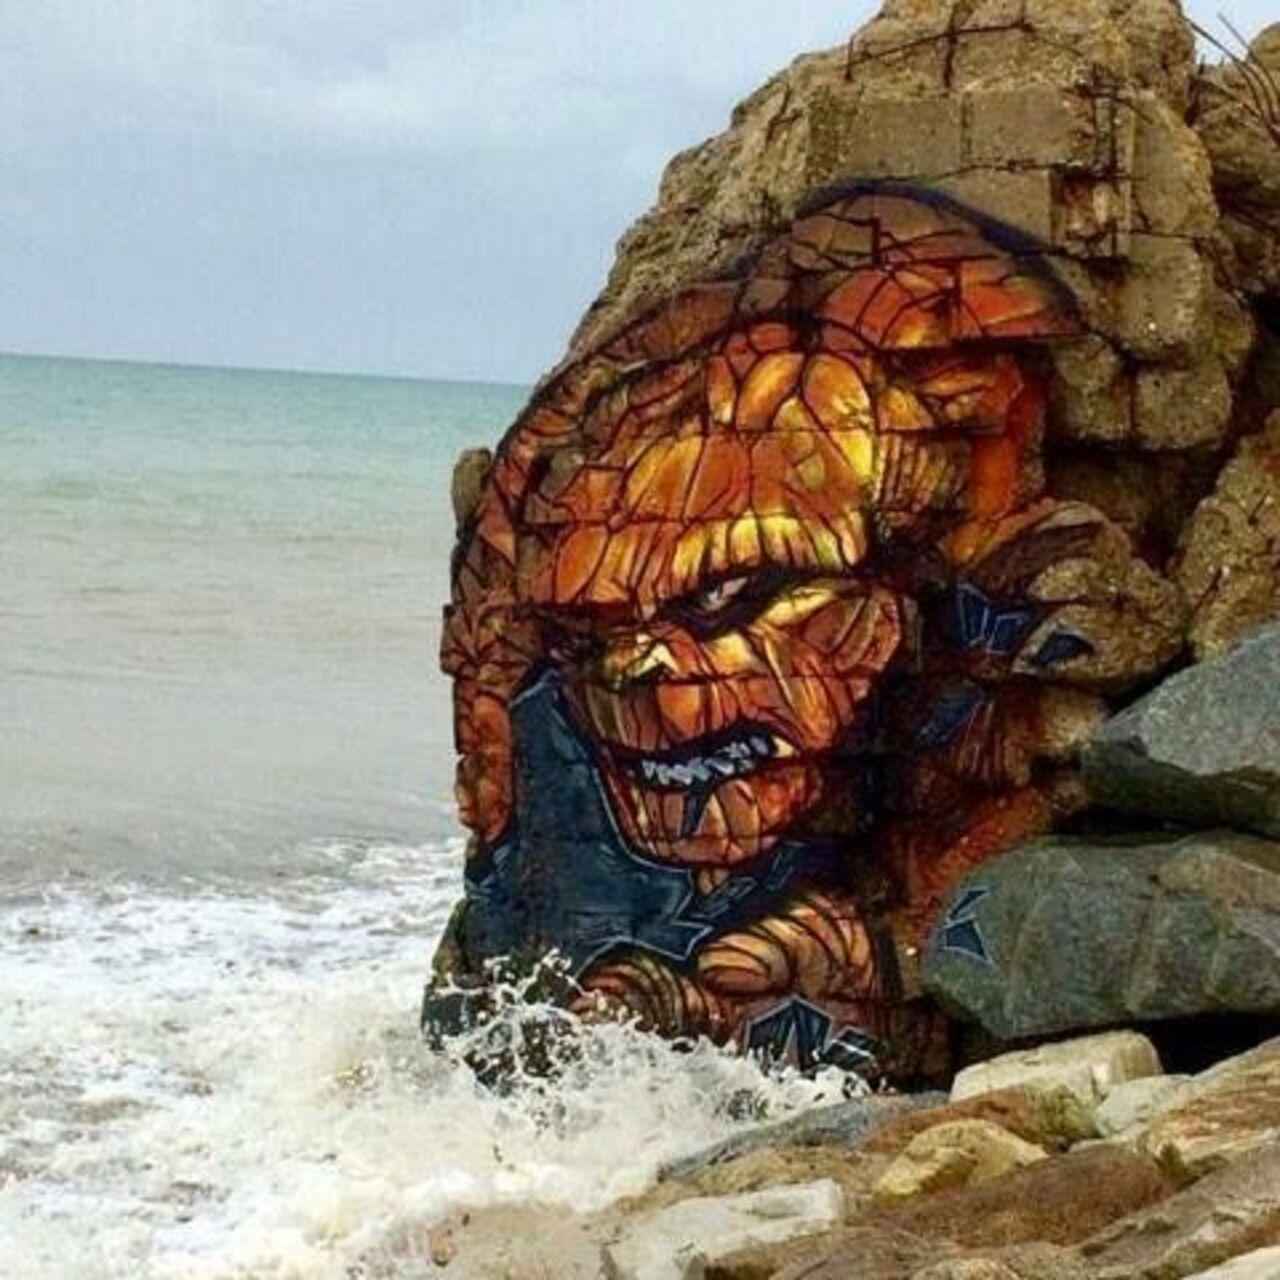 Beach art by Blesea Follow#streetart #mural #graffiti #art https://t.co/lLtYa1GXTy